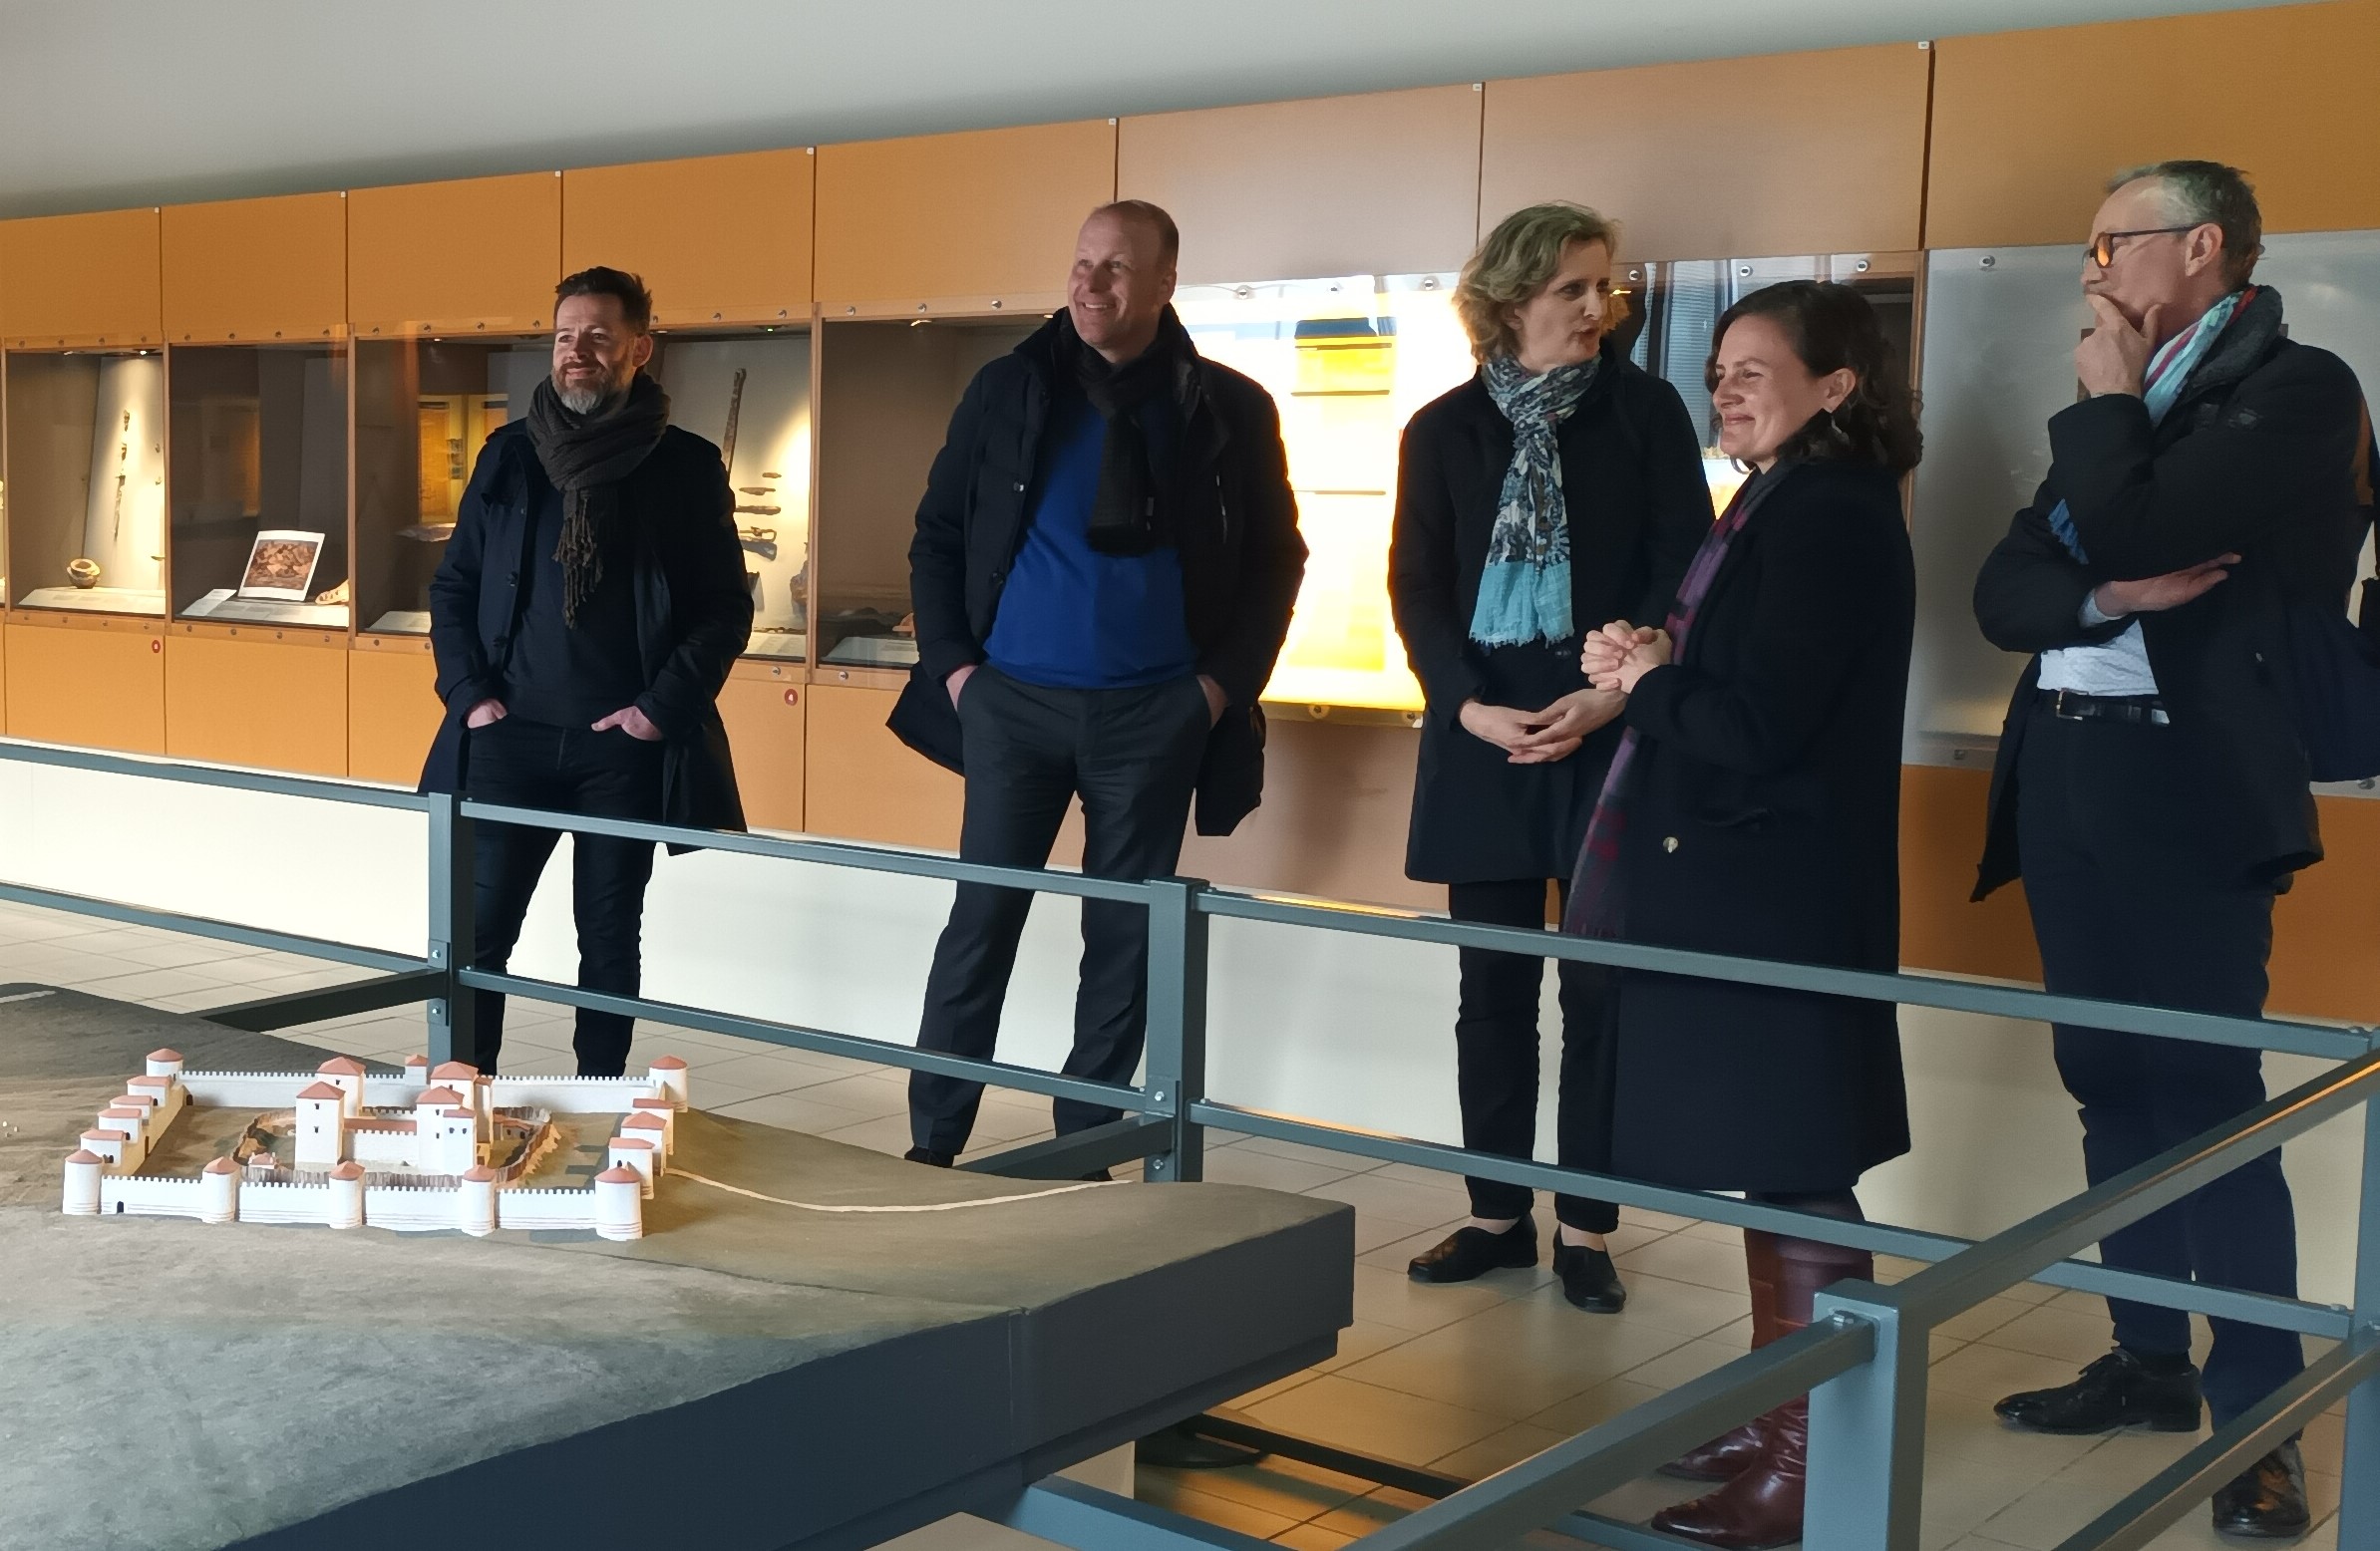 Bezirkstagspräsident Martin Sailer beim Besuch des Jublains-Museums.